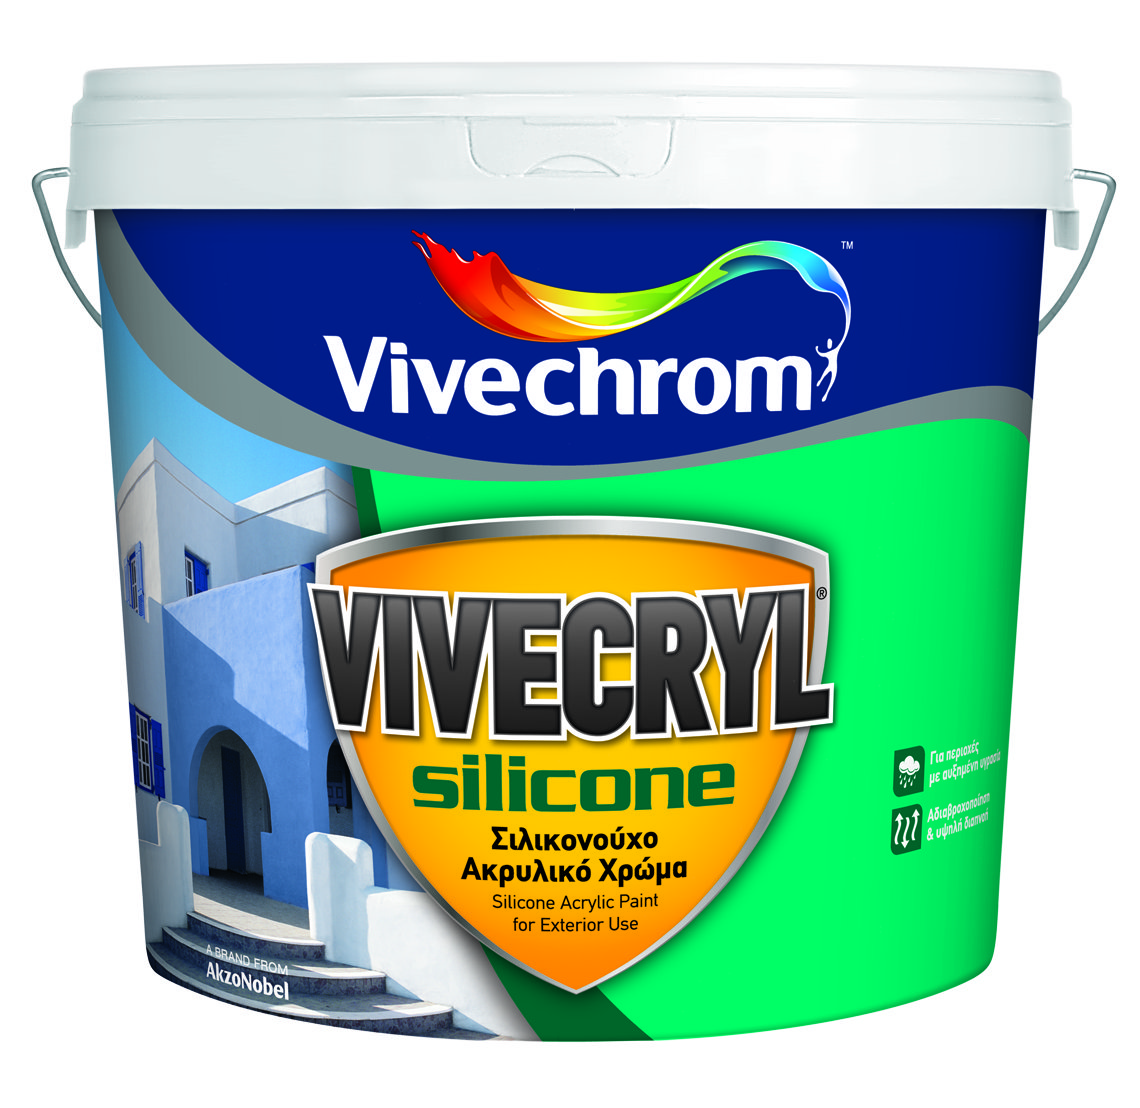 Vivechrom Vivecryl Silicone Matt Finish White 3L